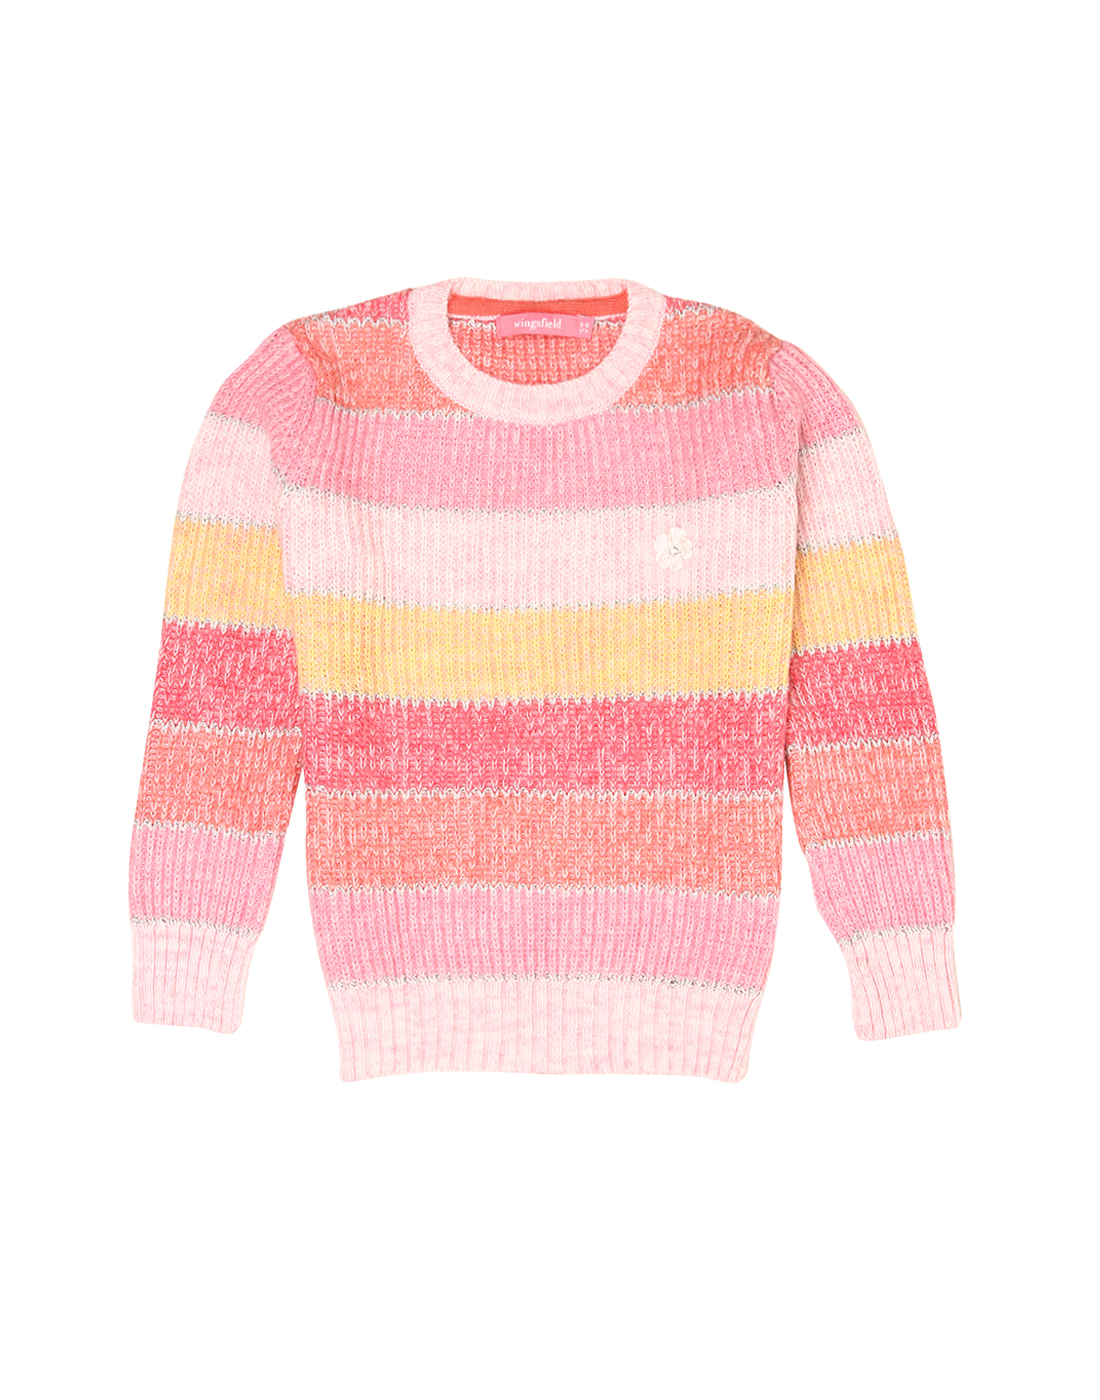 Wingsfield Girls Multicolor Sweater